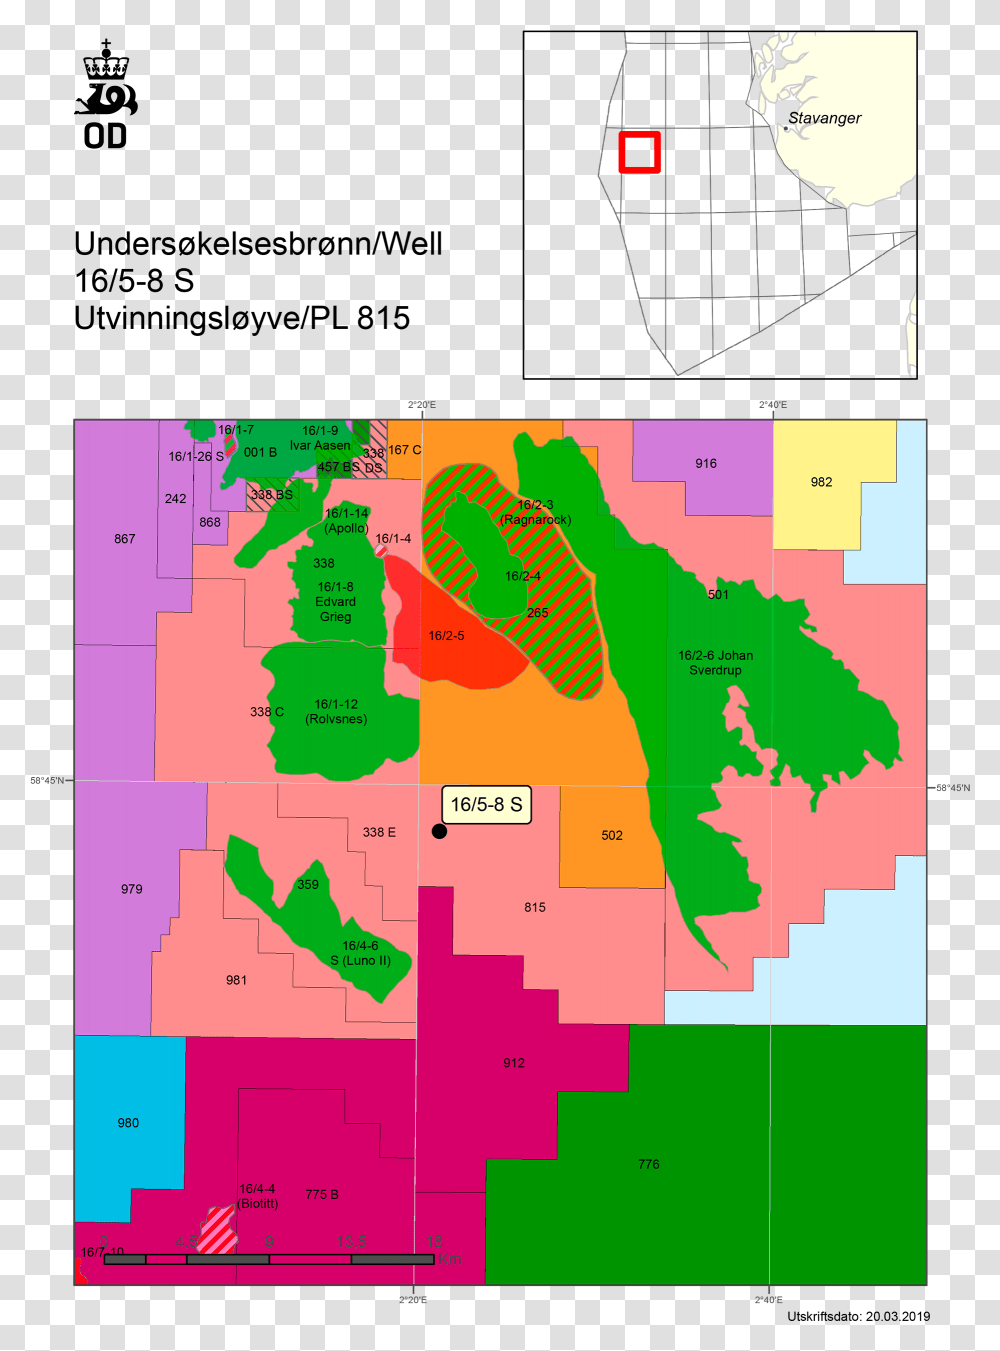 5 8 S Norwegian Petroleum Directorate, Plot, Map, Diagram, Poster Transparent Png